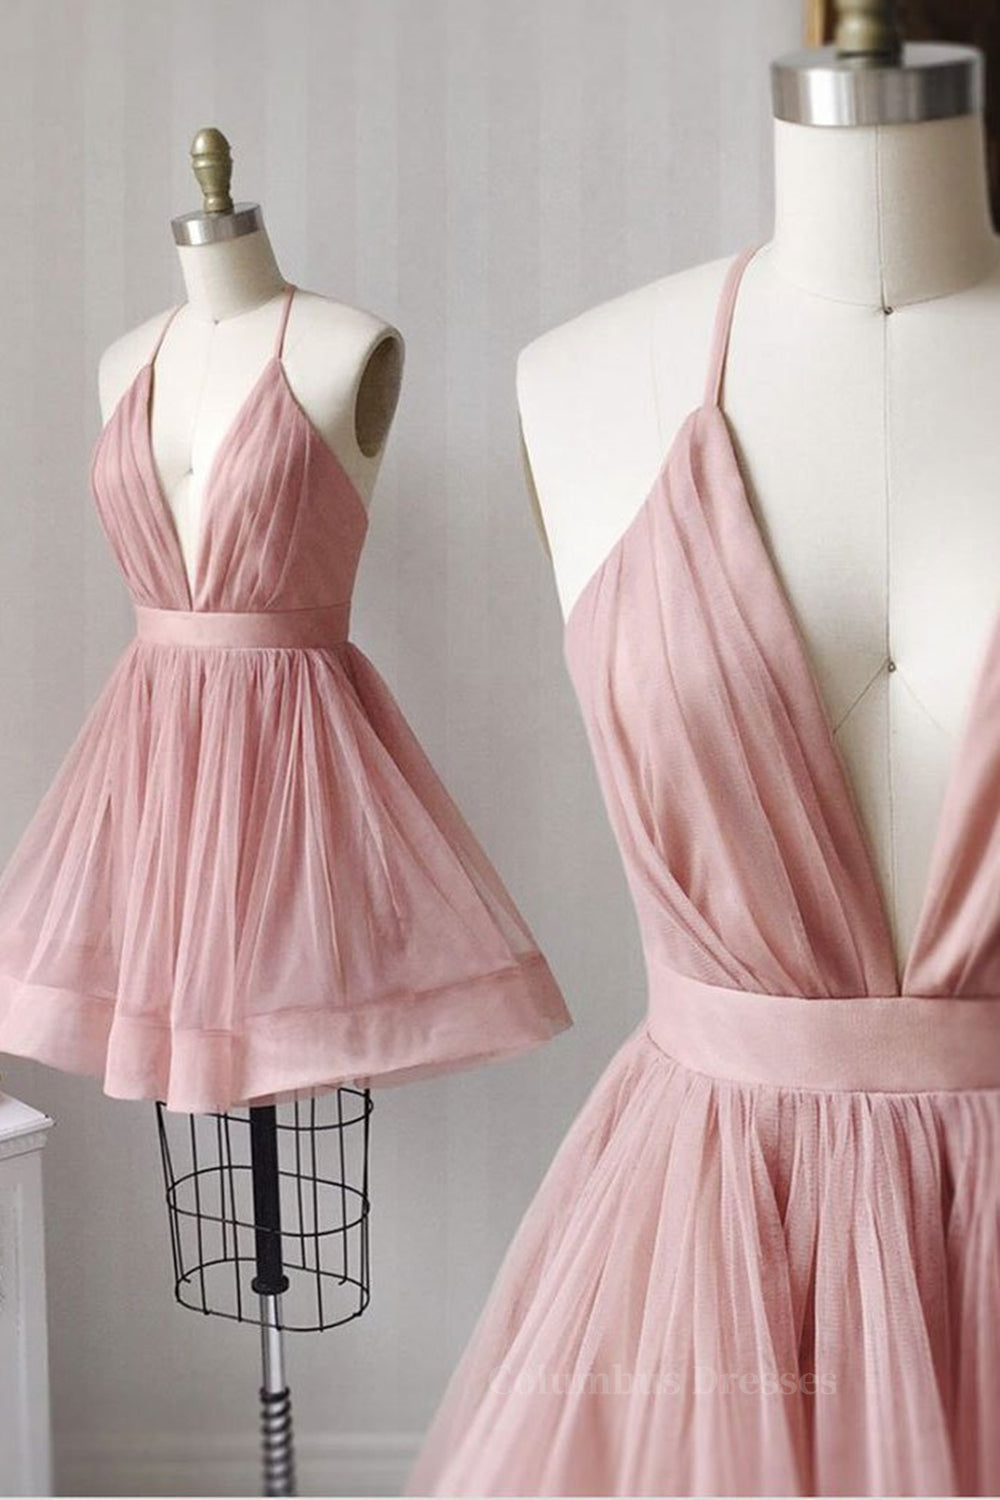 Party Dresses Online Shop, V Neck Pink Short Prom Dresses, Pink Homecoming Dresses, Short Pink Formal Evening Dresses